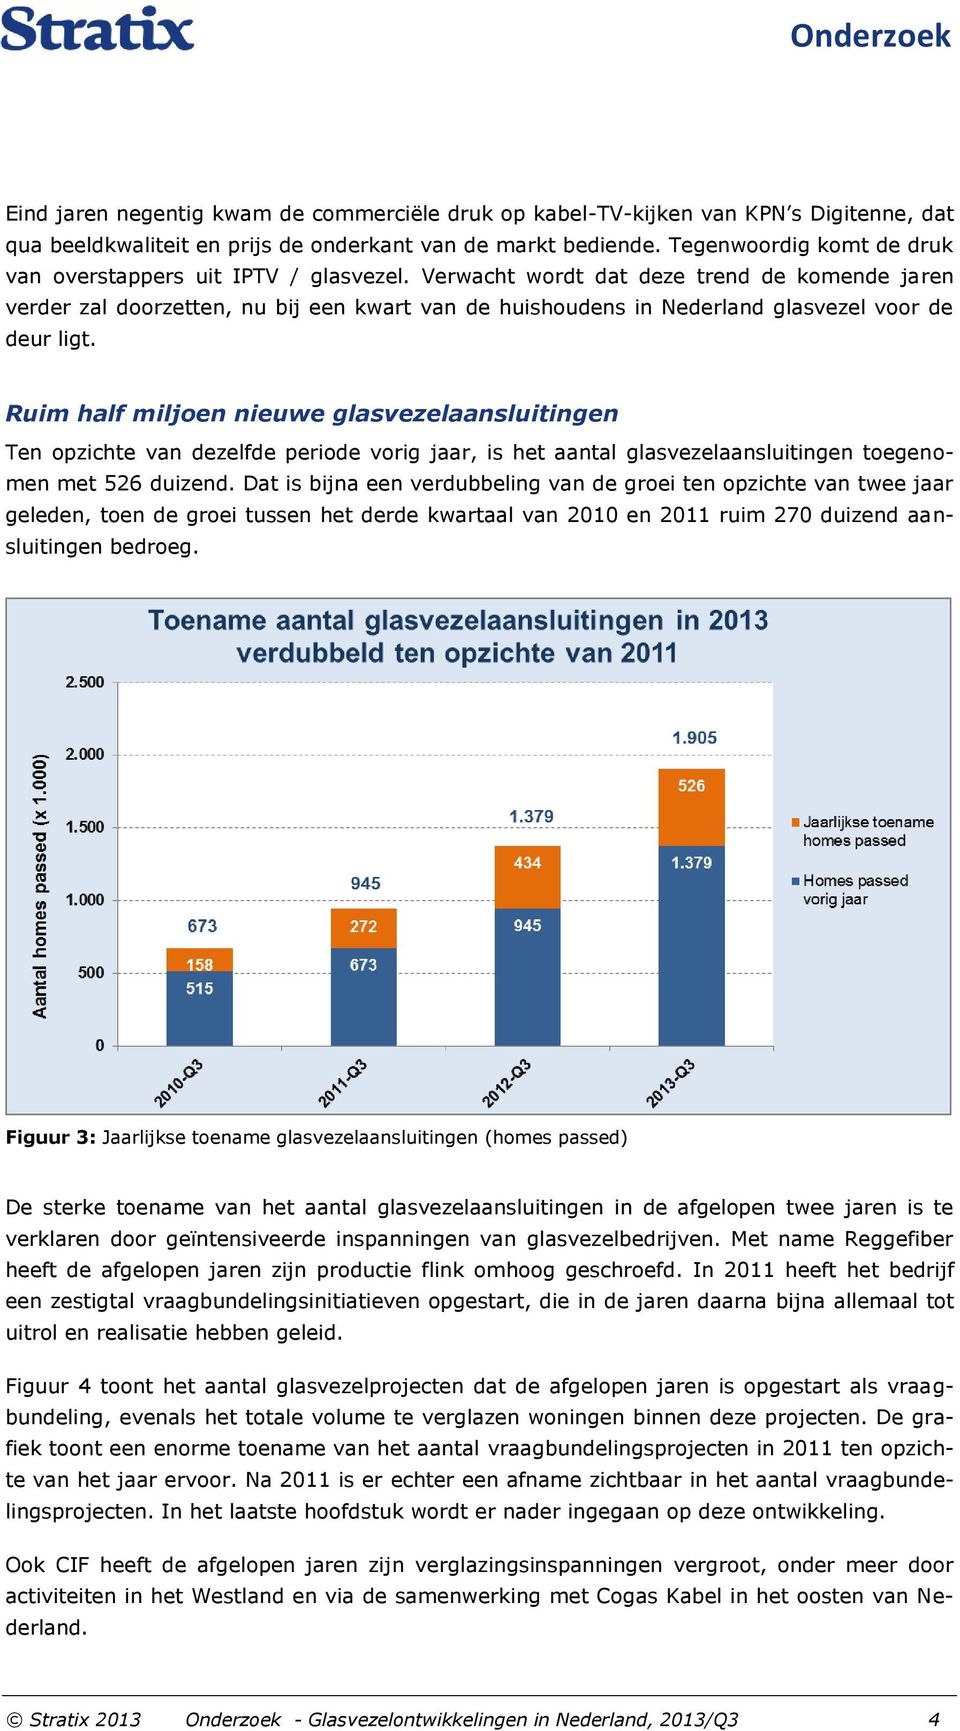 Verwacht wordt dat deze trend de komende jaren verder zal doorzetten, nu bij een kwart van de huishoudens in Nederland glasvezel voor de deur ligt.